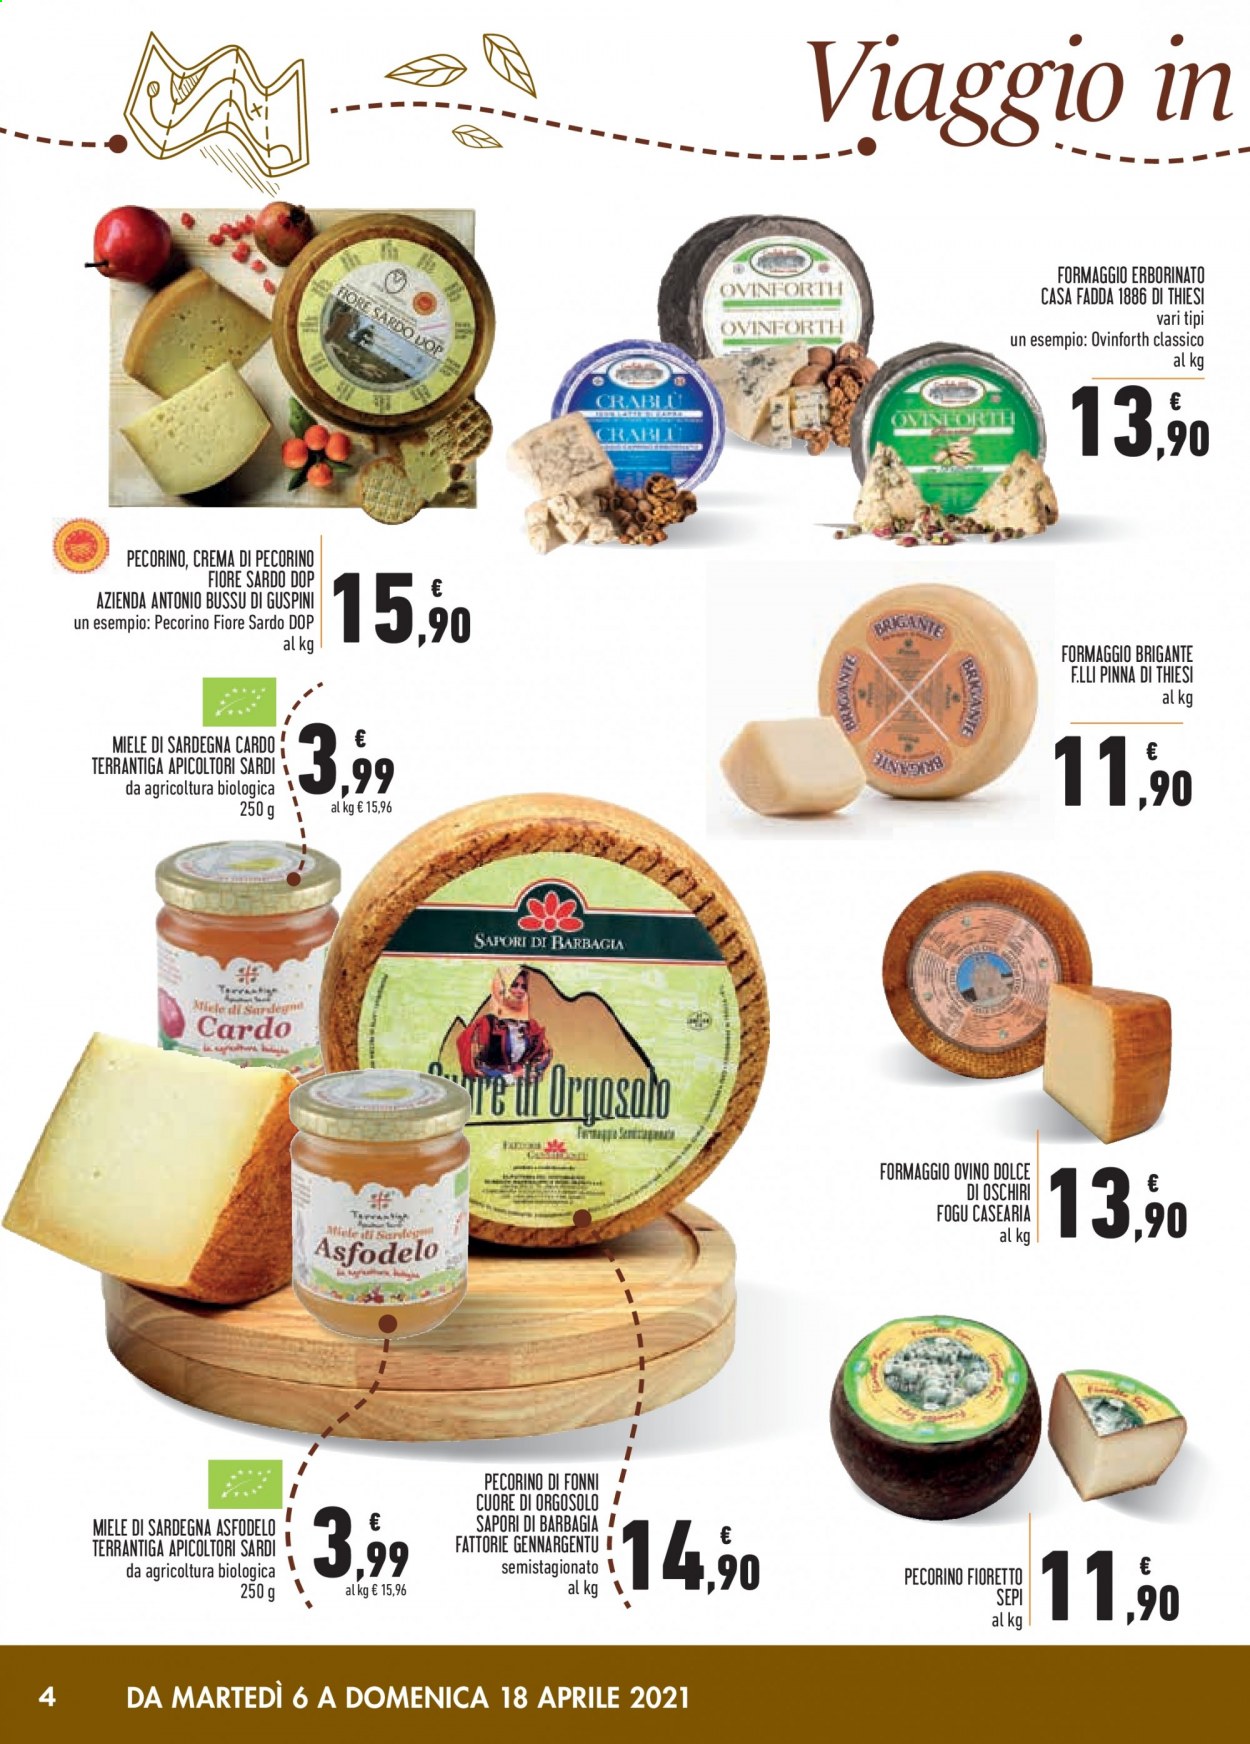 thumbnail - Volantino Conad - 6/4/2021 - 18/4/2021 - Prodotti in offerta - formaggio, pecorino, miele. Pagina 4.